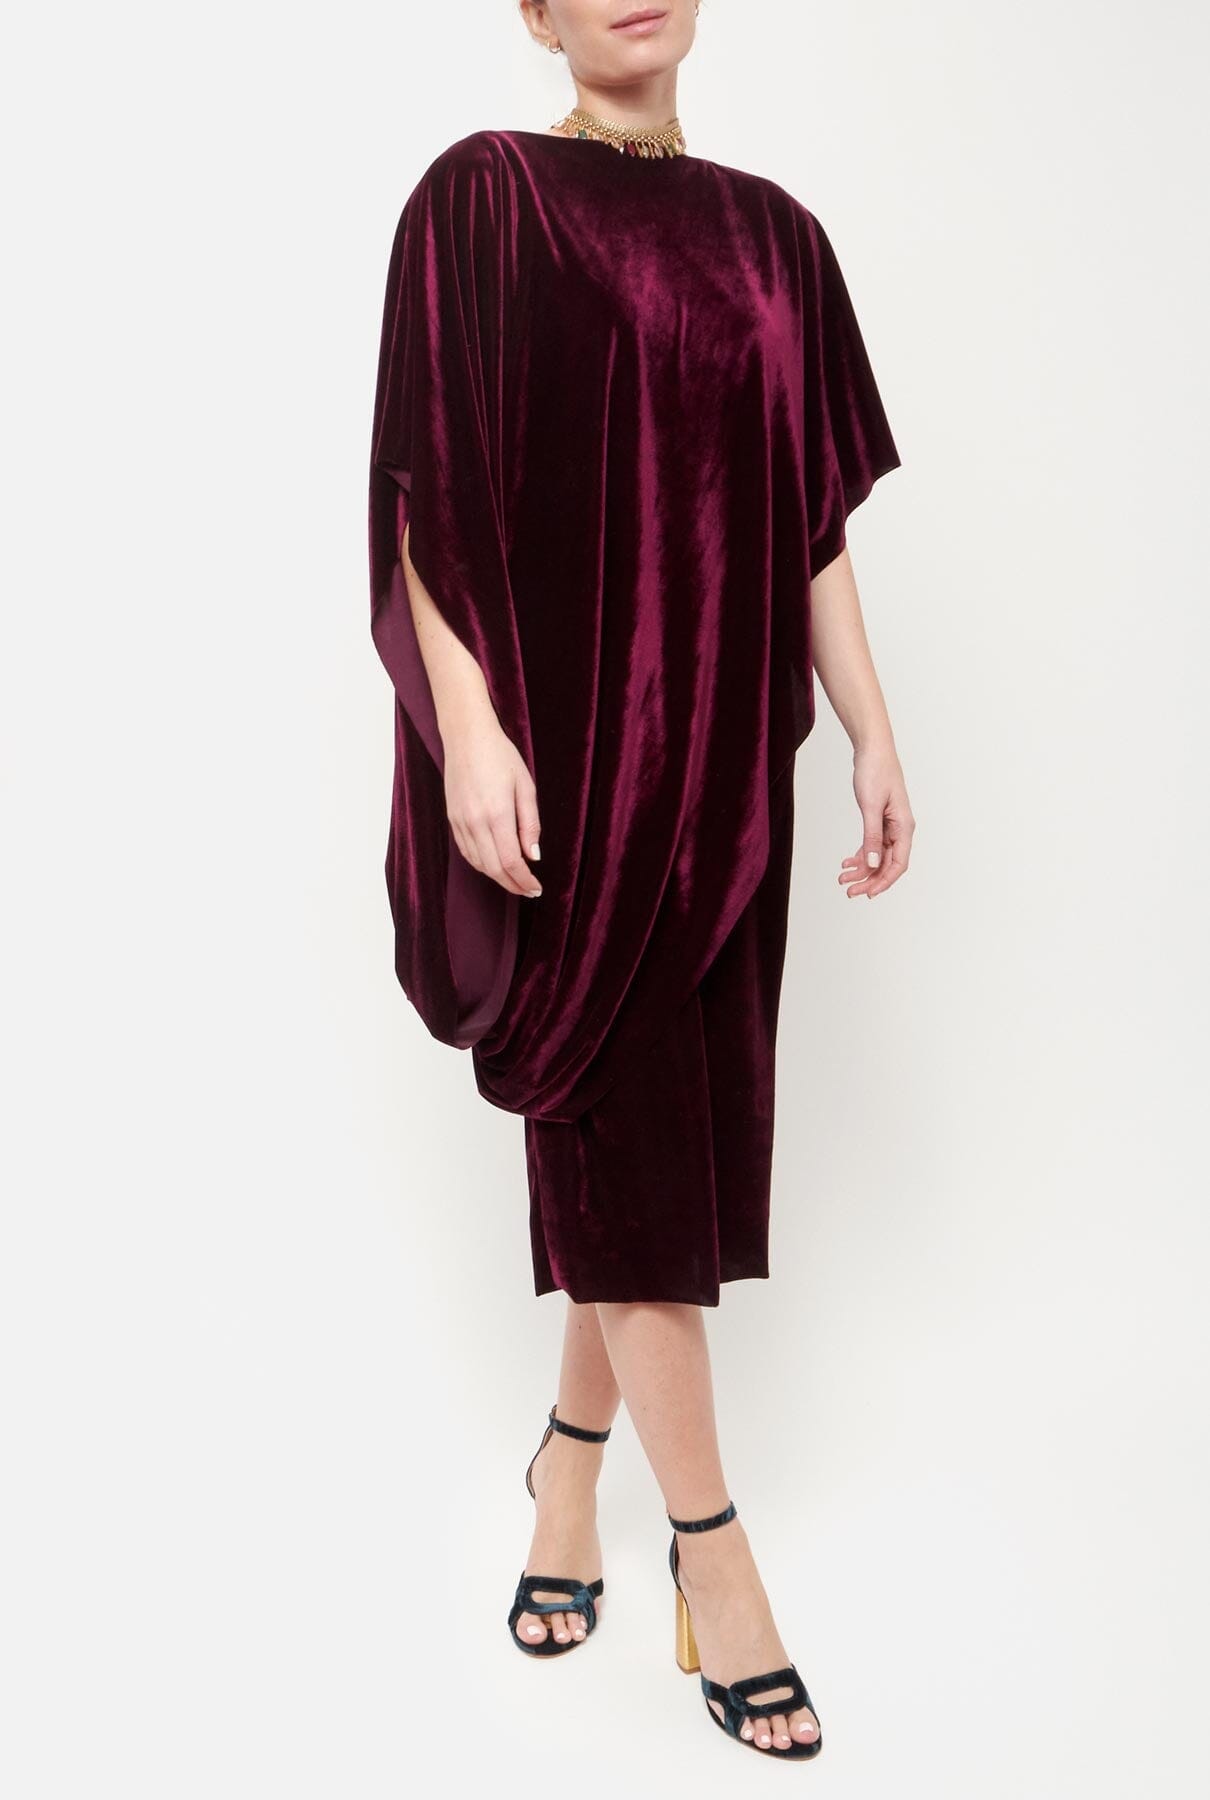 Marlene Terciopelo Dress Purple Dresses Duyos 